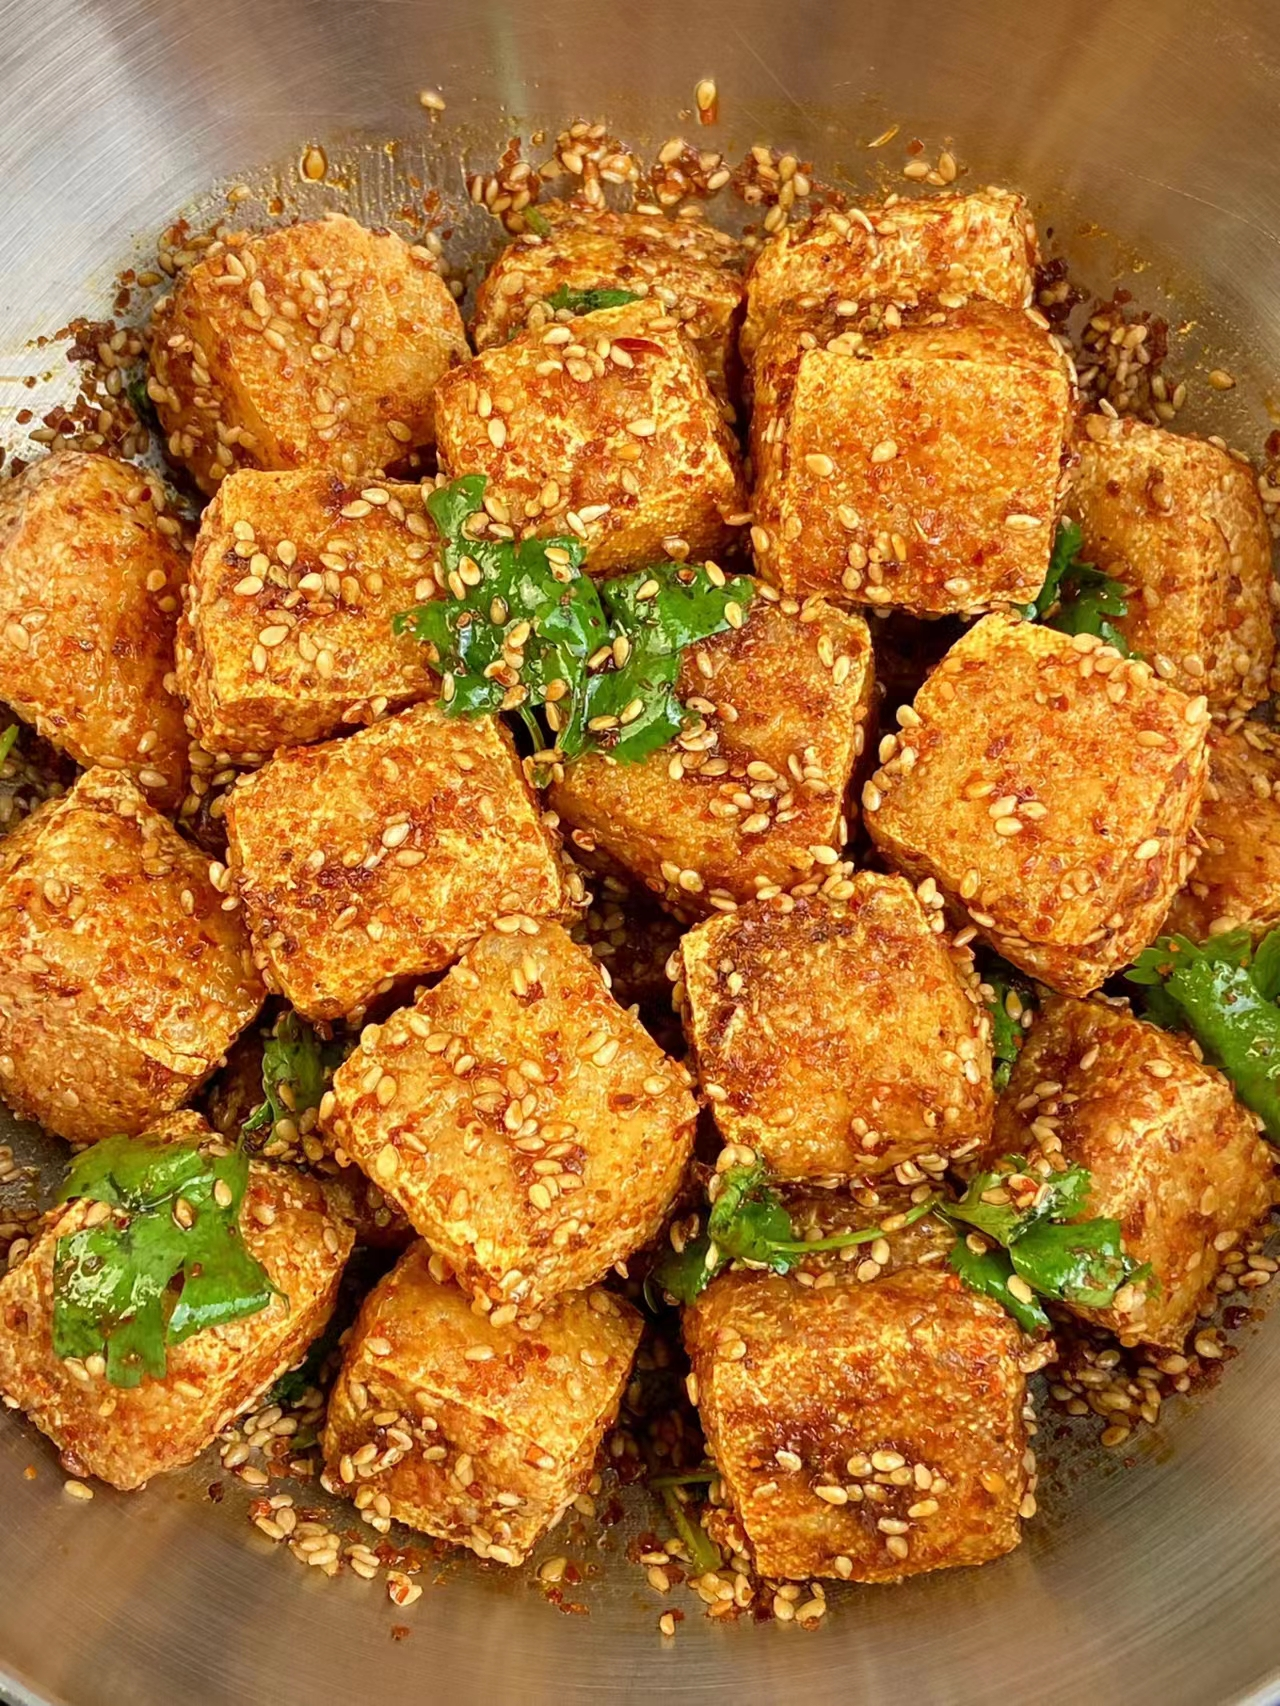 脆皮豆腐家常做法,做法简单,烧出来的豆腐金黄,酥脆美味!